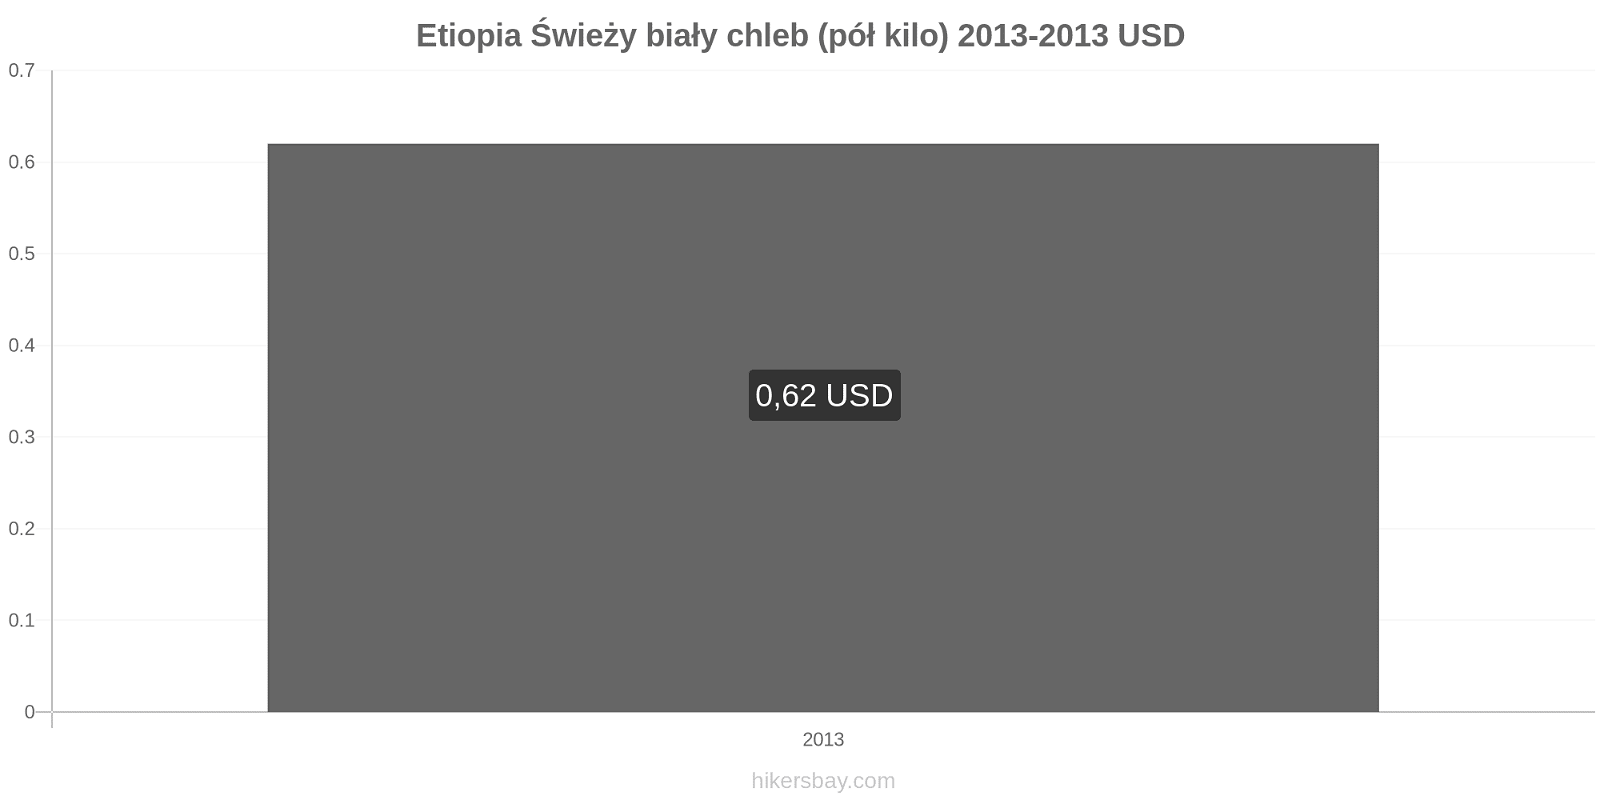 Etiopia zmiany cen Chleb pół kilo hikersbay.com